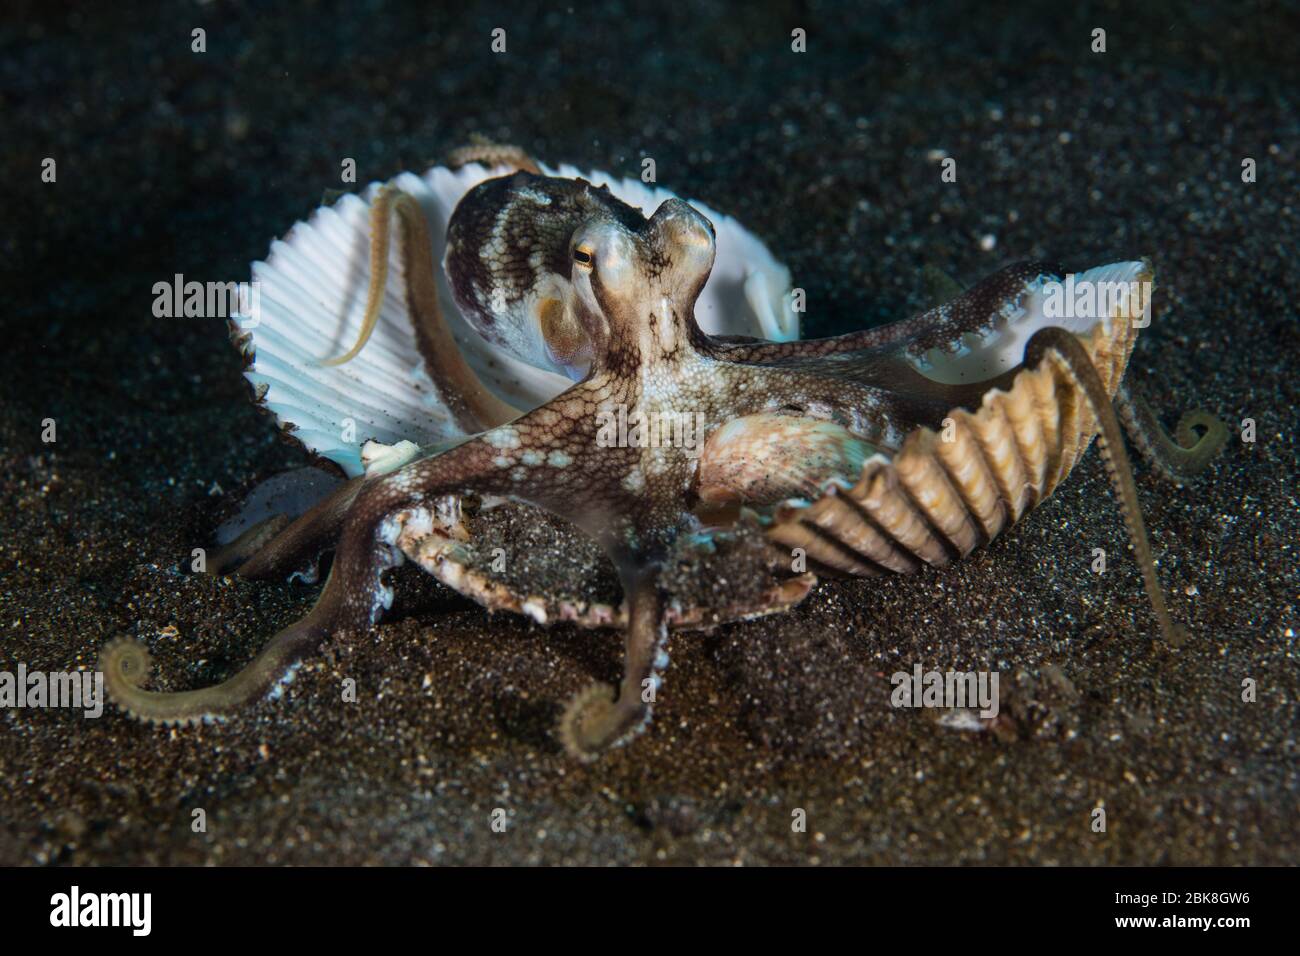 Ein wendiger Kokosnuss-Krake, Amphiocopus marinatus, trägt Muschelschalen über den sandigen Meeresboden, um sich in der Lembeh-Straße, Indonesien, zu schützen. Stockfoto